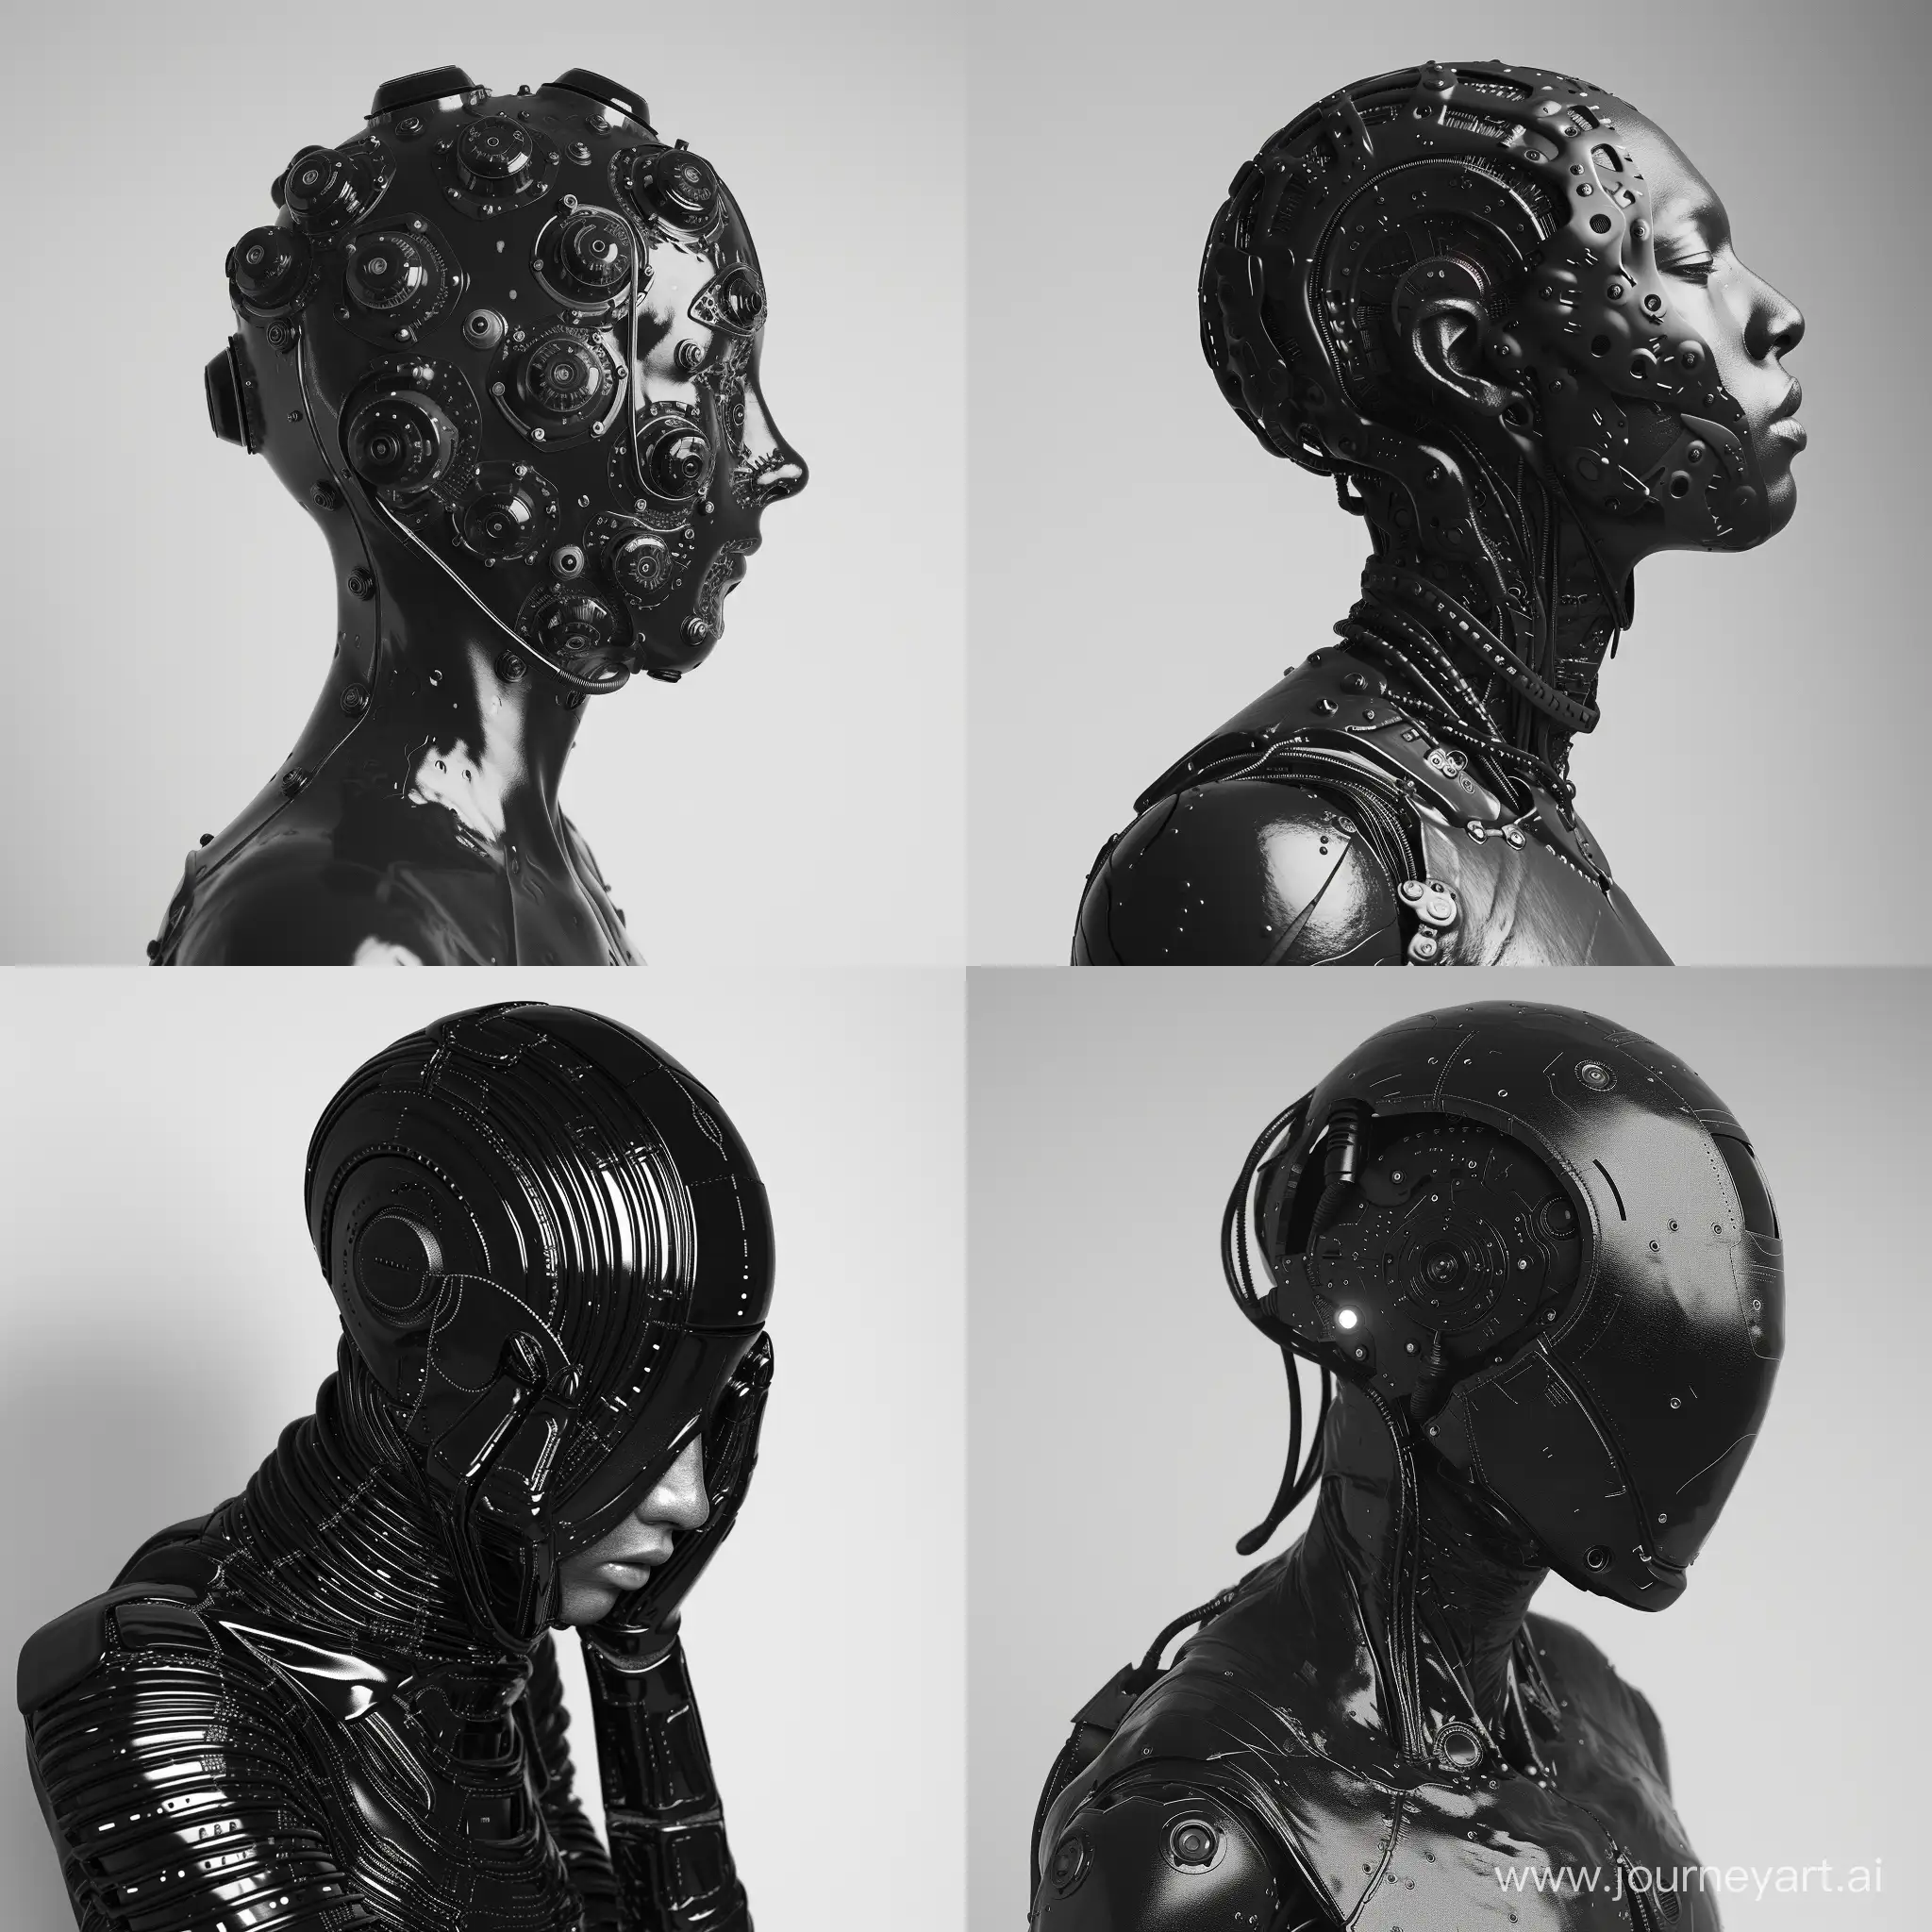 LatexClad-Humanoid-Robot-in-Minimalistic-Studio-Setting